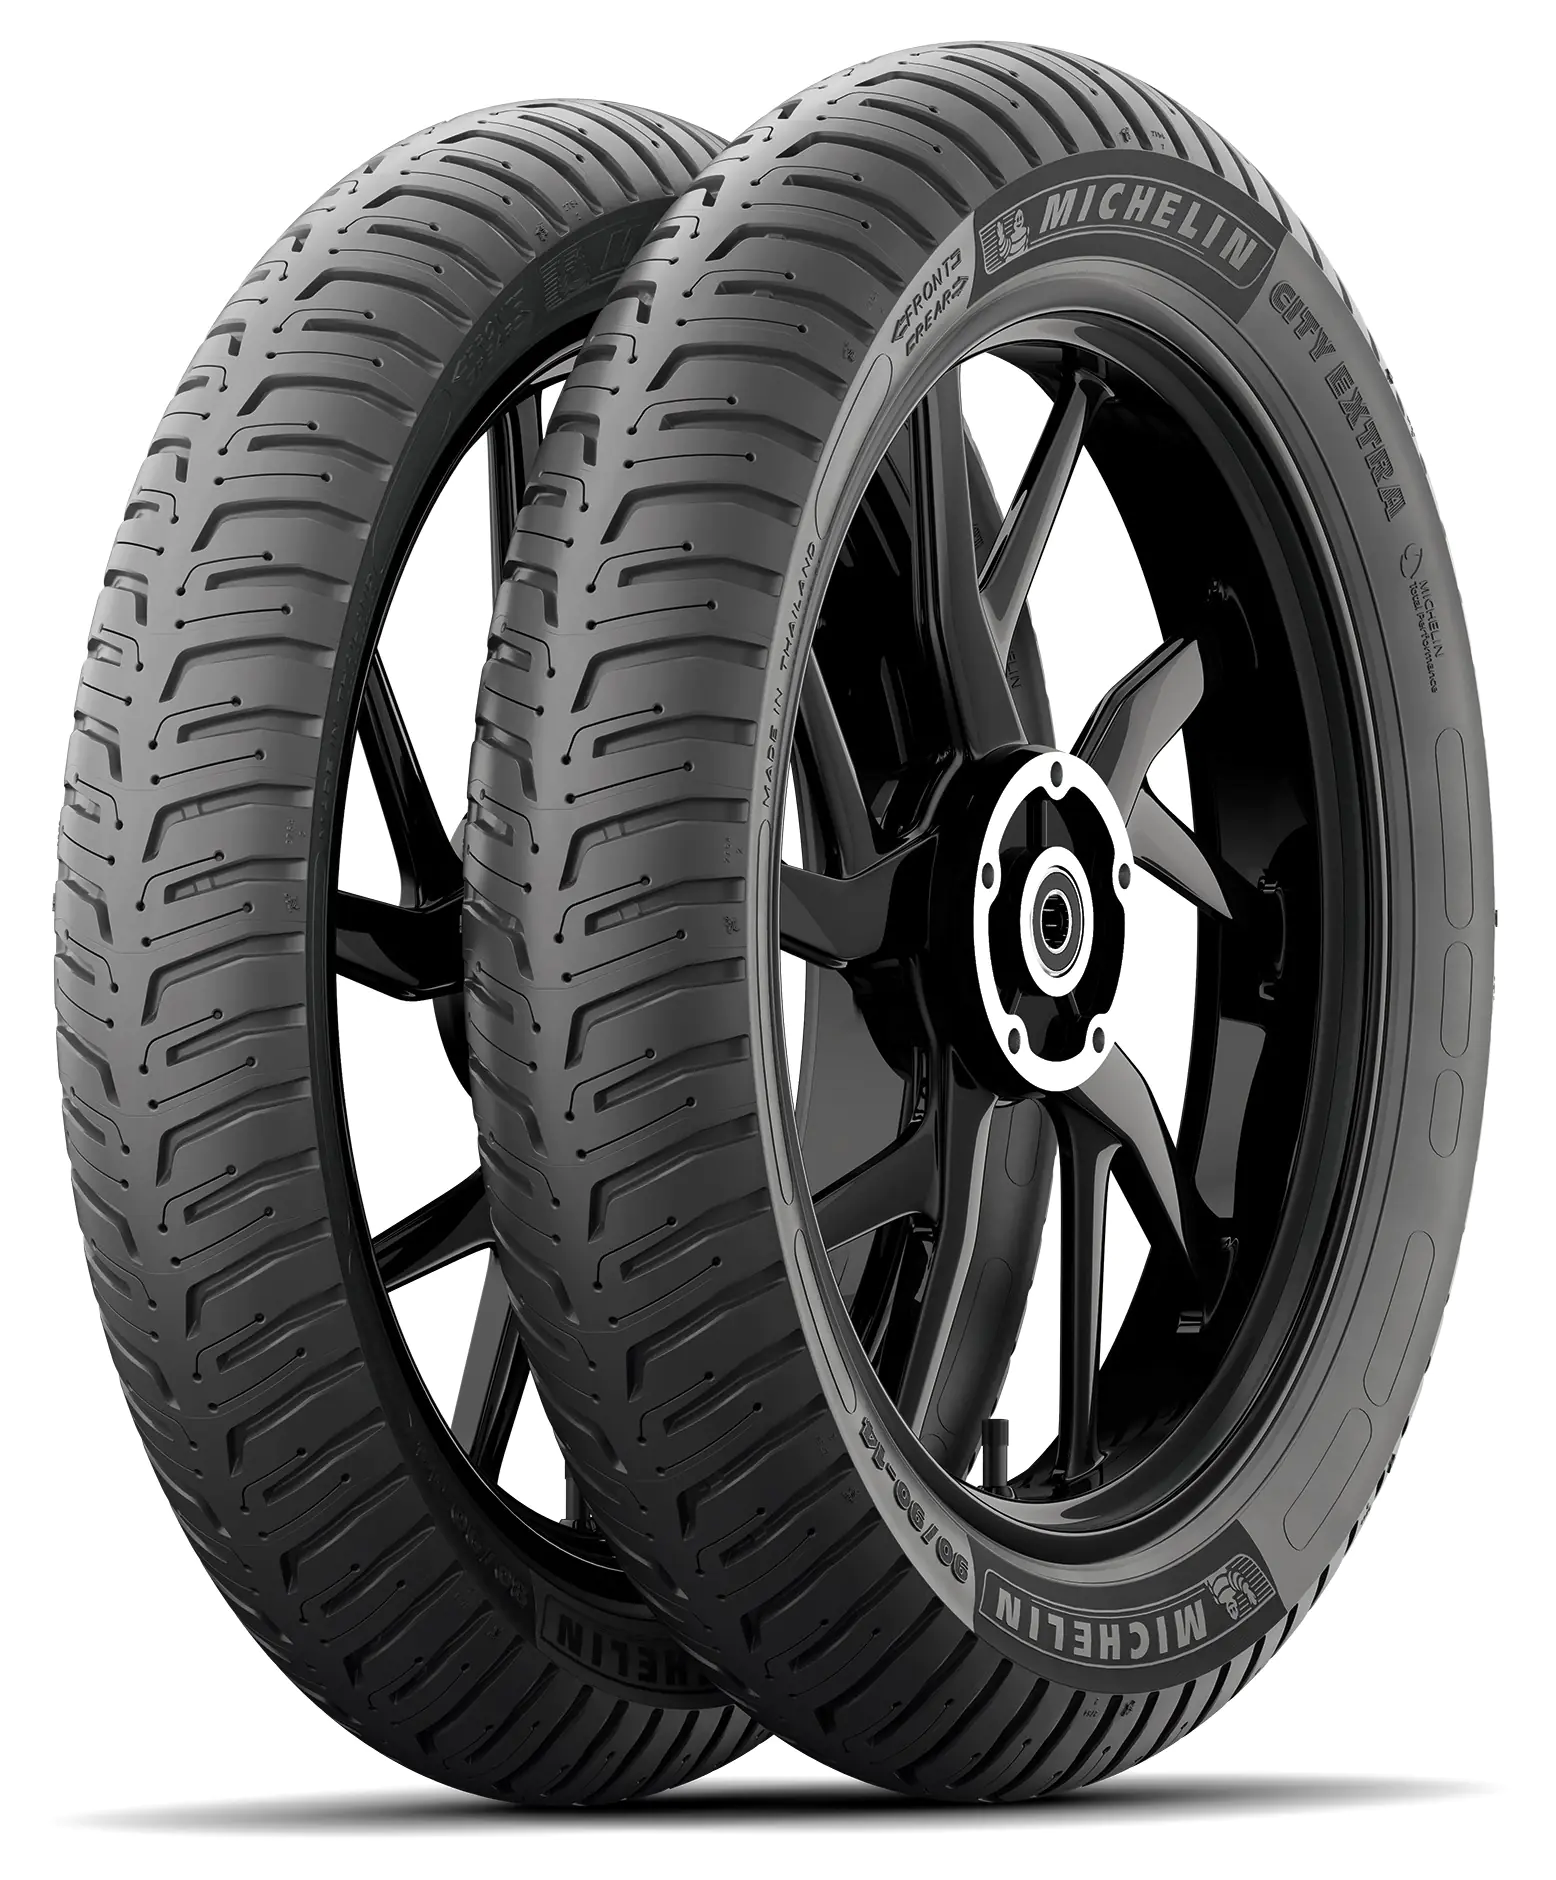 Michelin Michelin 130/70 R12 62P CITY EXTRA pneumatici nuovi Estivo 